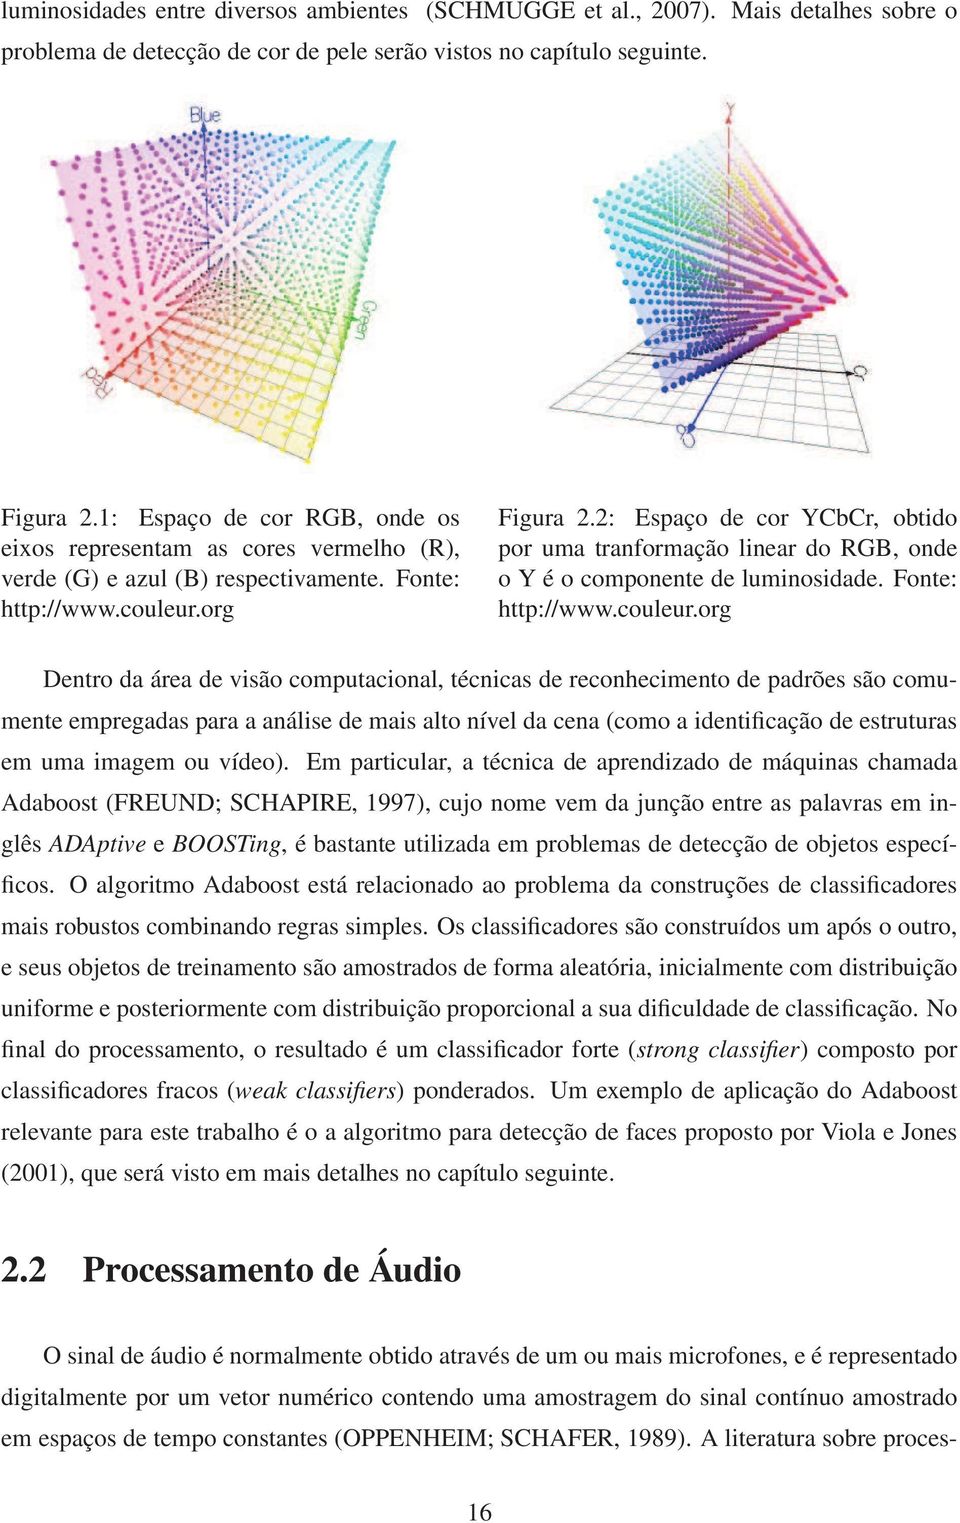 2: Espaço de cor YCbCr, obtido por uma tranformação linear do RGB, onde o Y é o componente de luminosidade. Fonte: http://www.couleur.